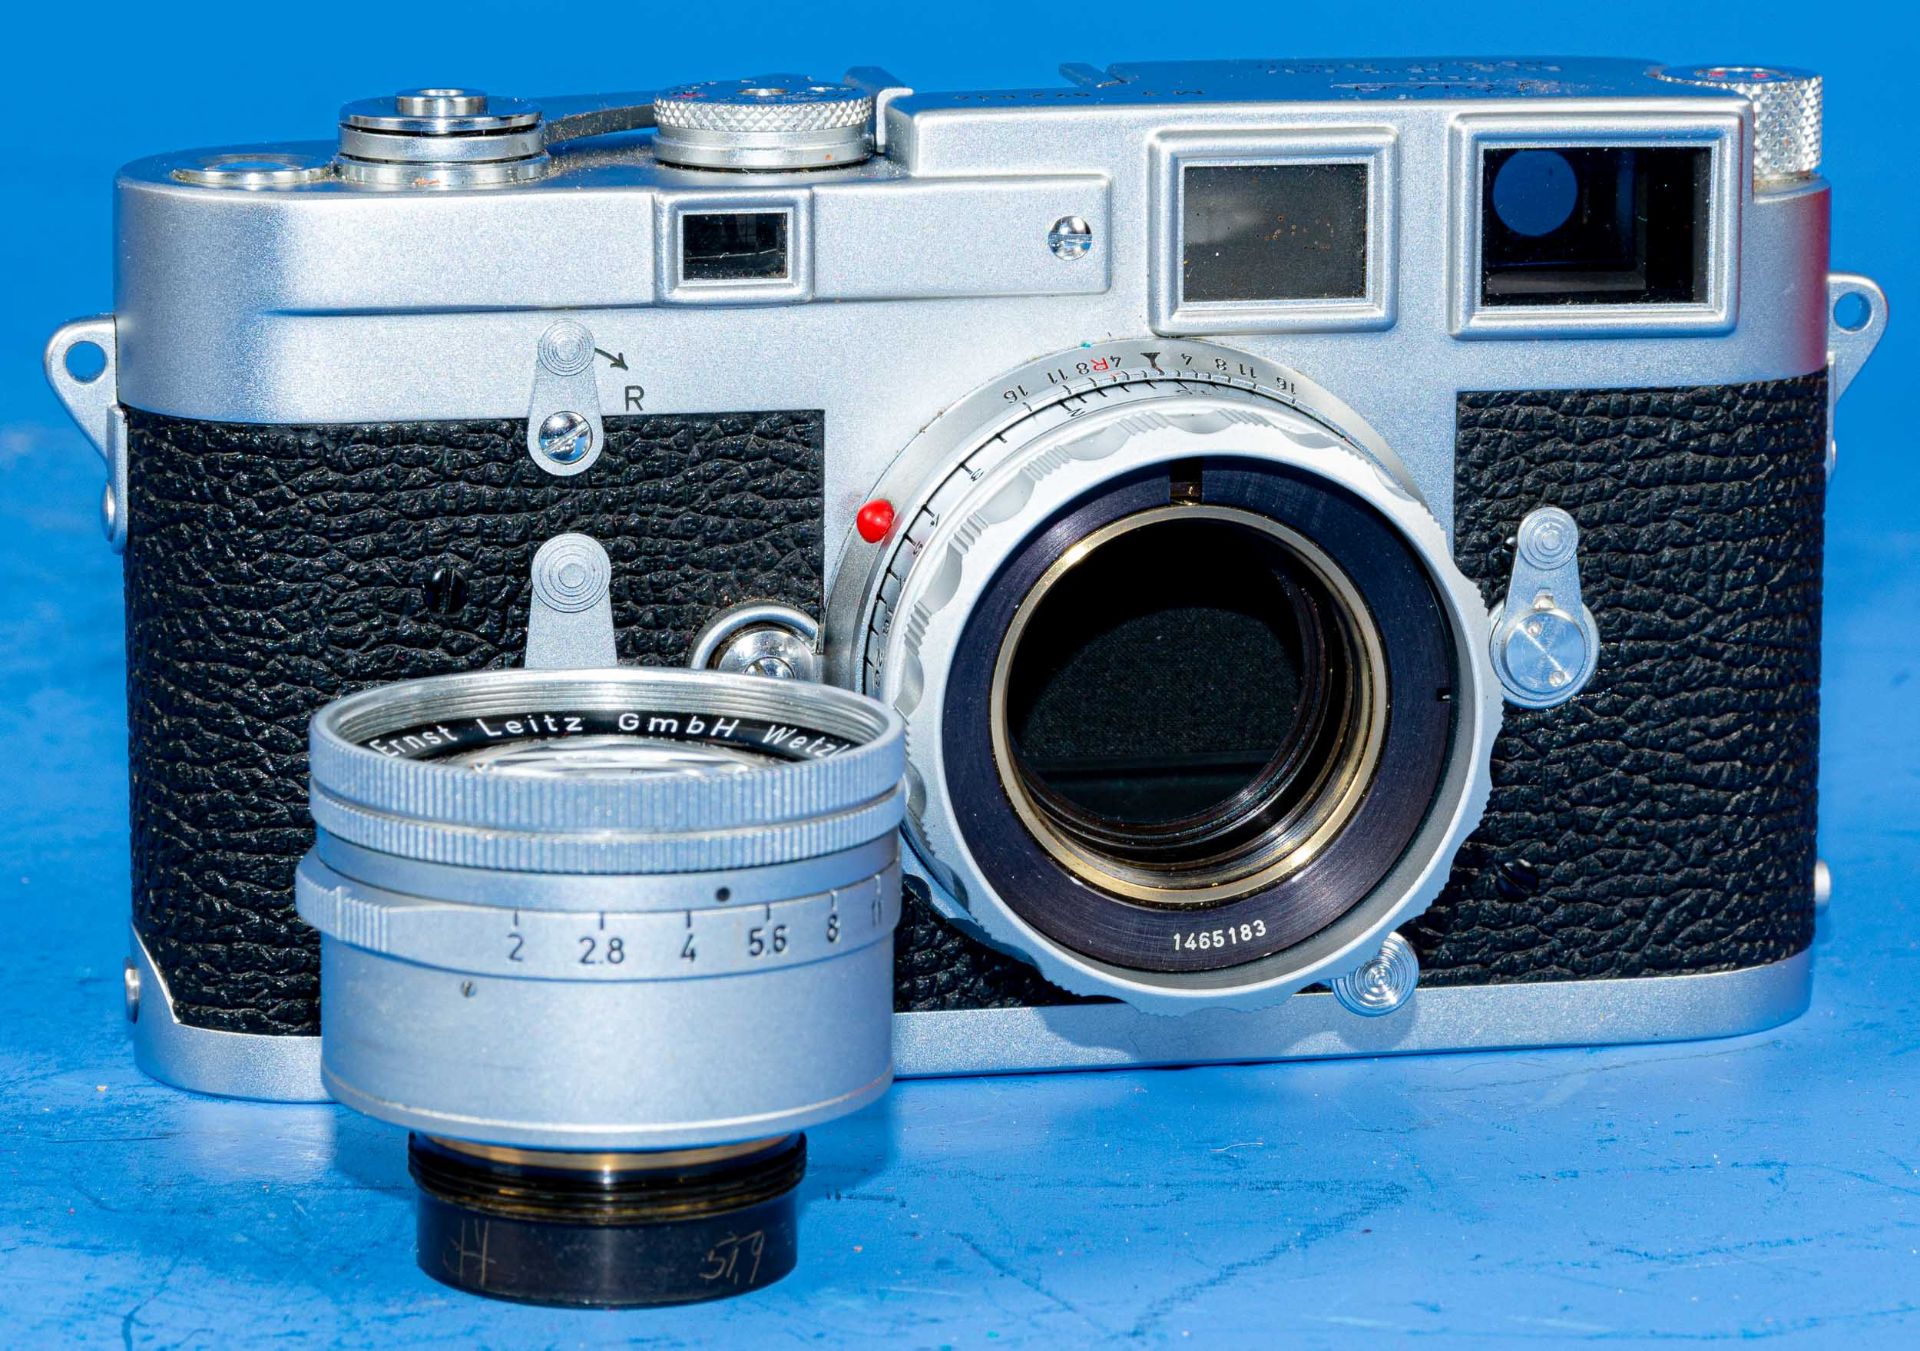 Frühe Leica M3 mit Summicron Objektiv Nr. 1465183 in orig. Box und Lederfutteral; klare Optik, Gehä - Bild 9 aus 16